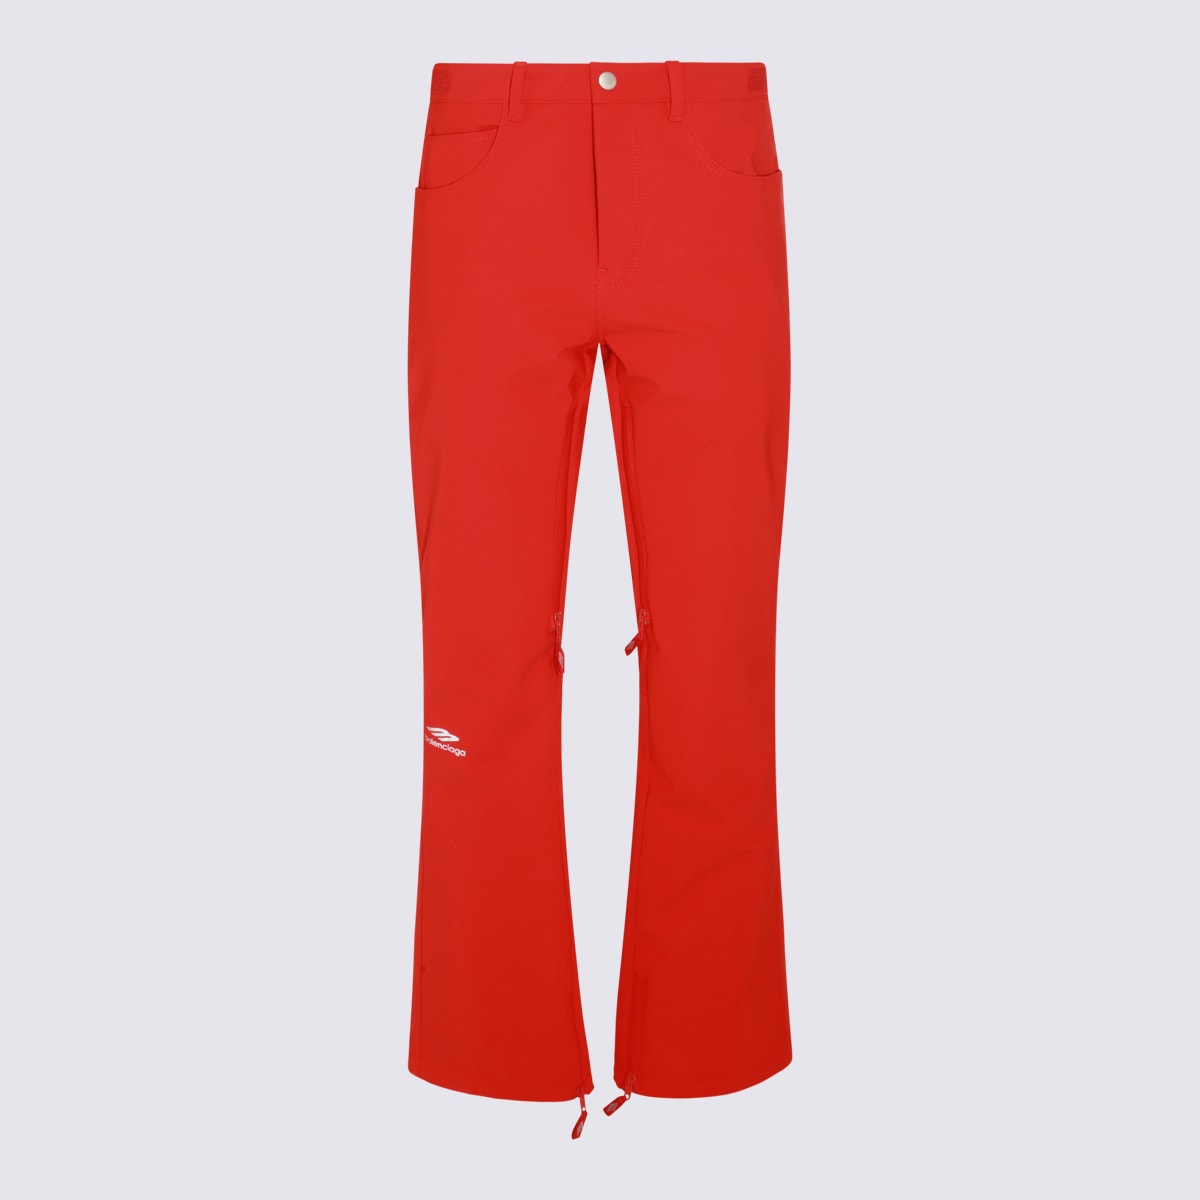 Balenciaga Red Pants